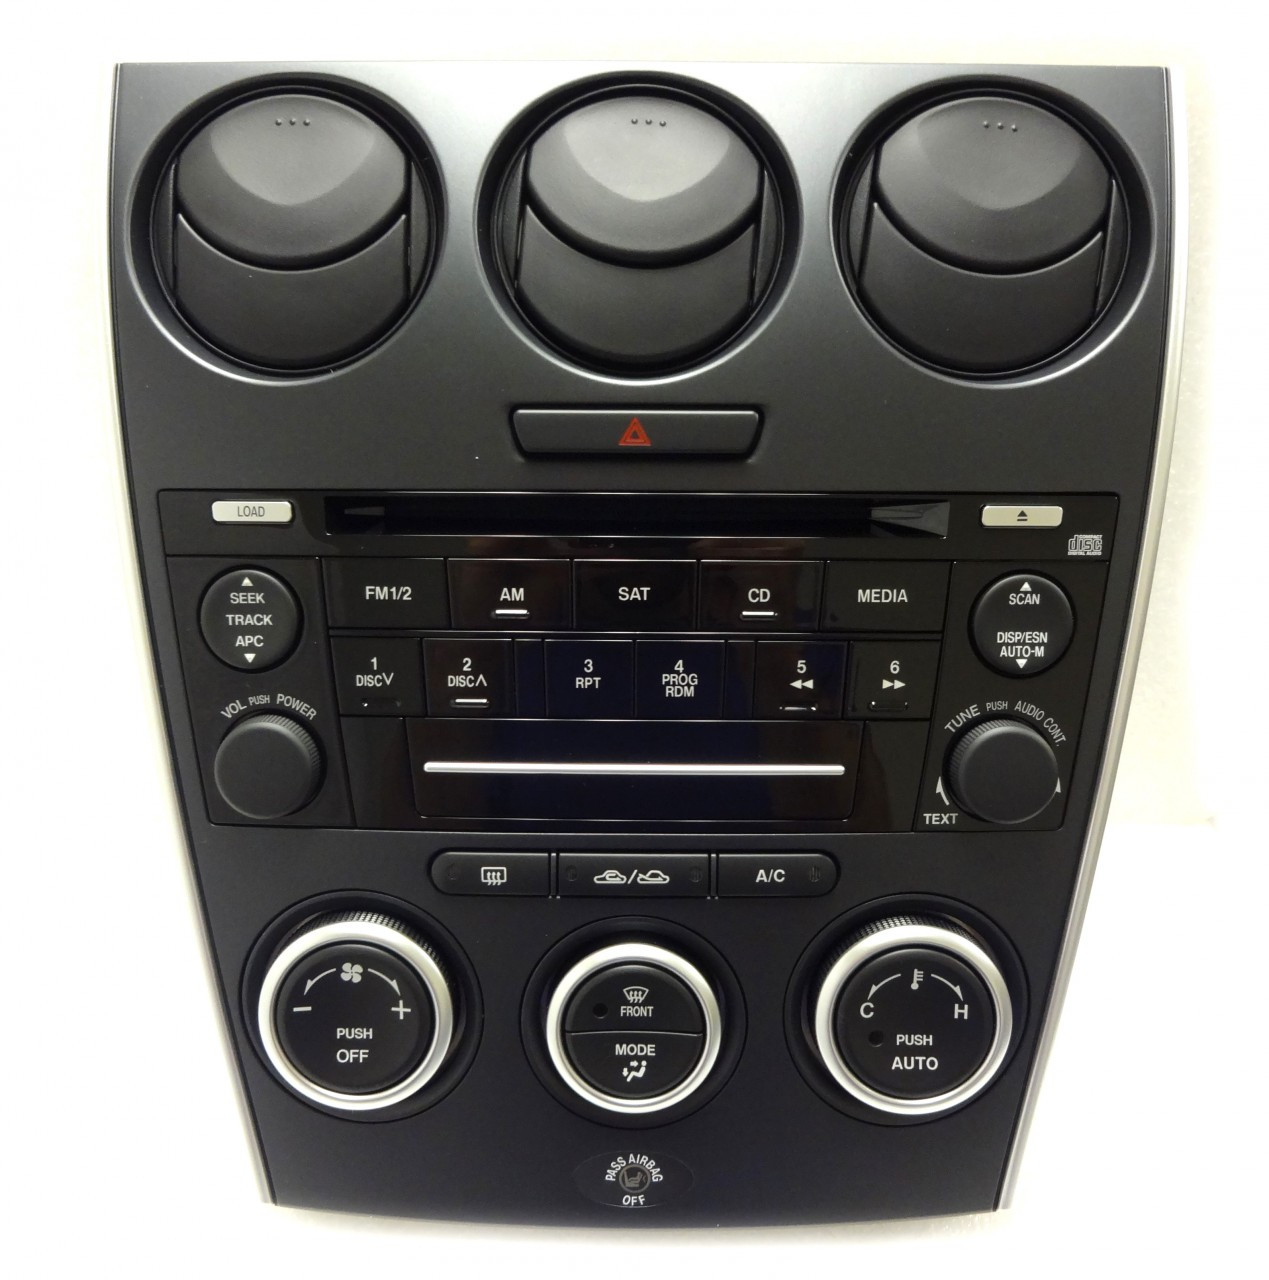 MAZDA 6 Radio Stereo CD Player Auto Climate Temp Controls